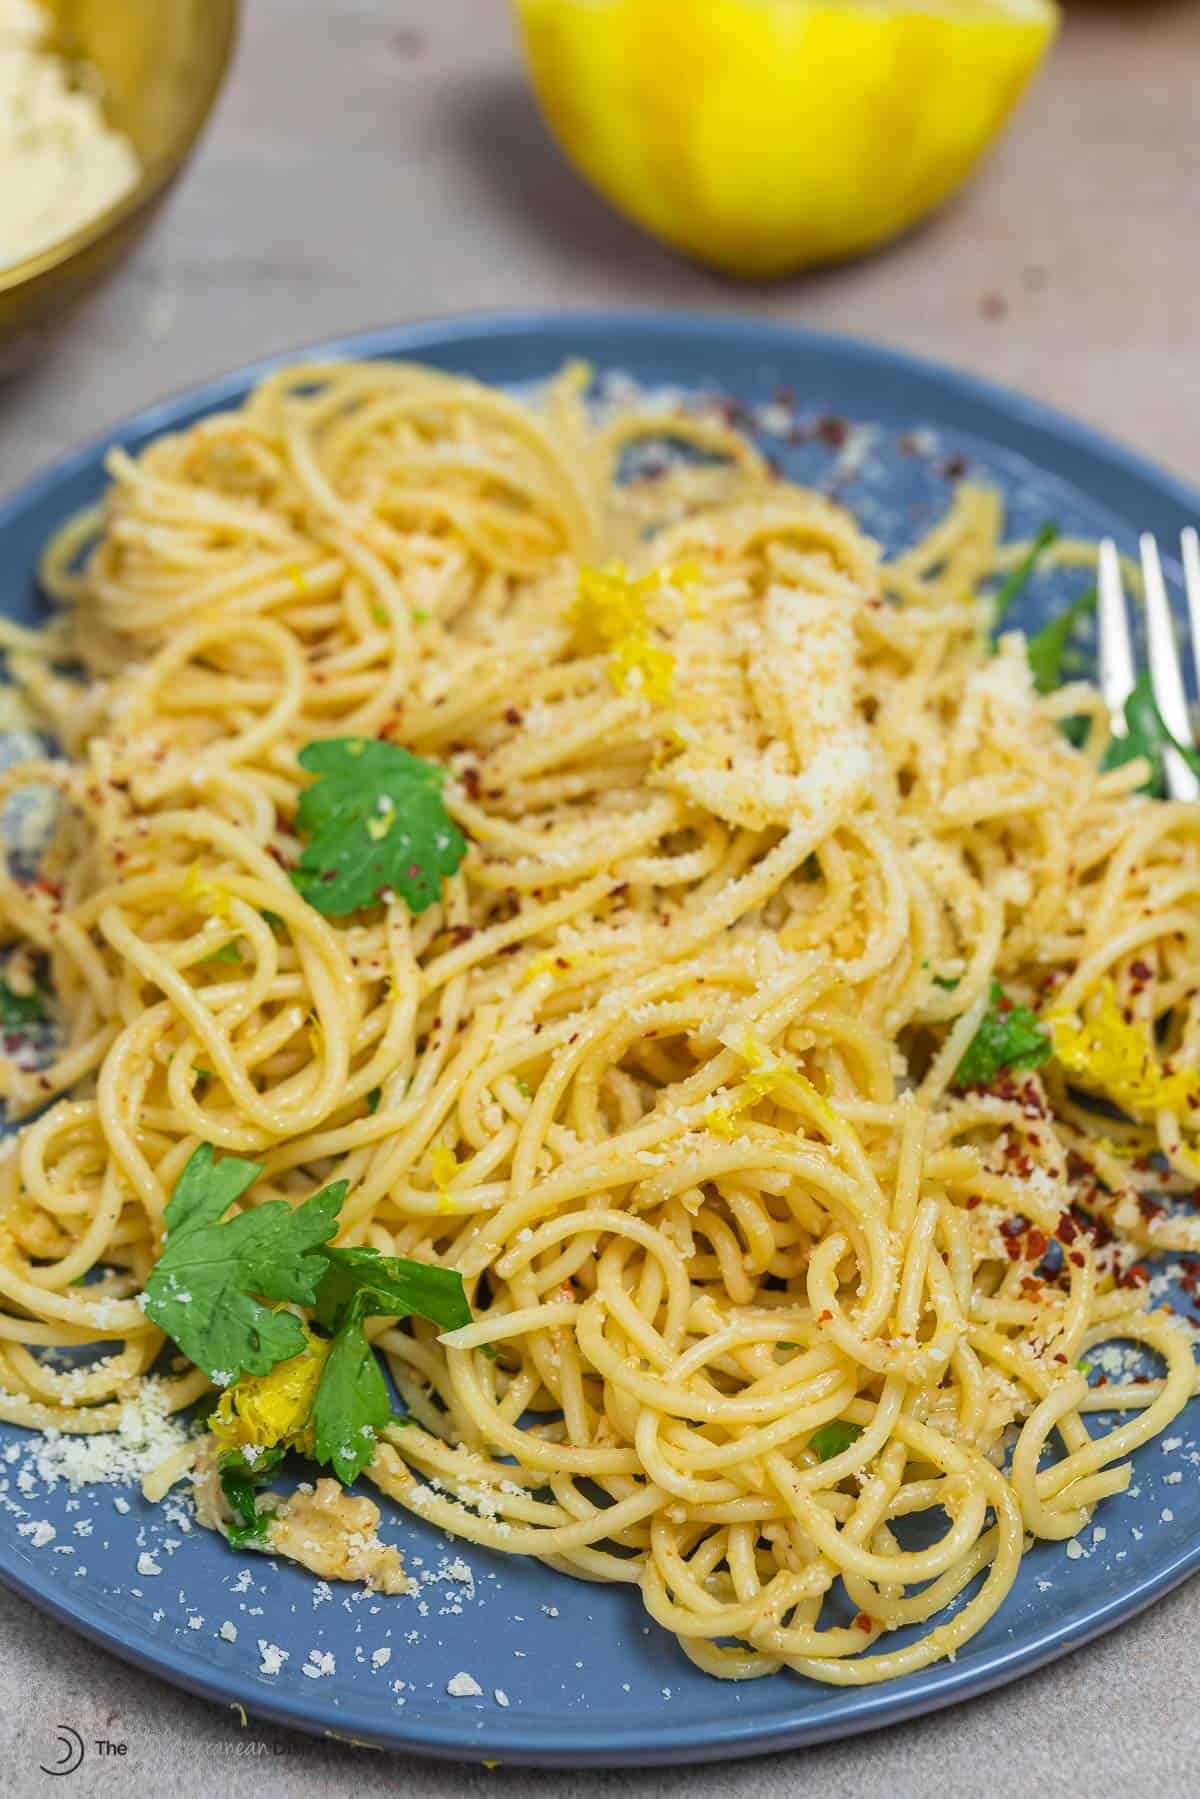 un spaghetti al limone plus léger sur une assiette saupoudrée de parmesan et de flocons de piment rouge.